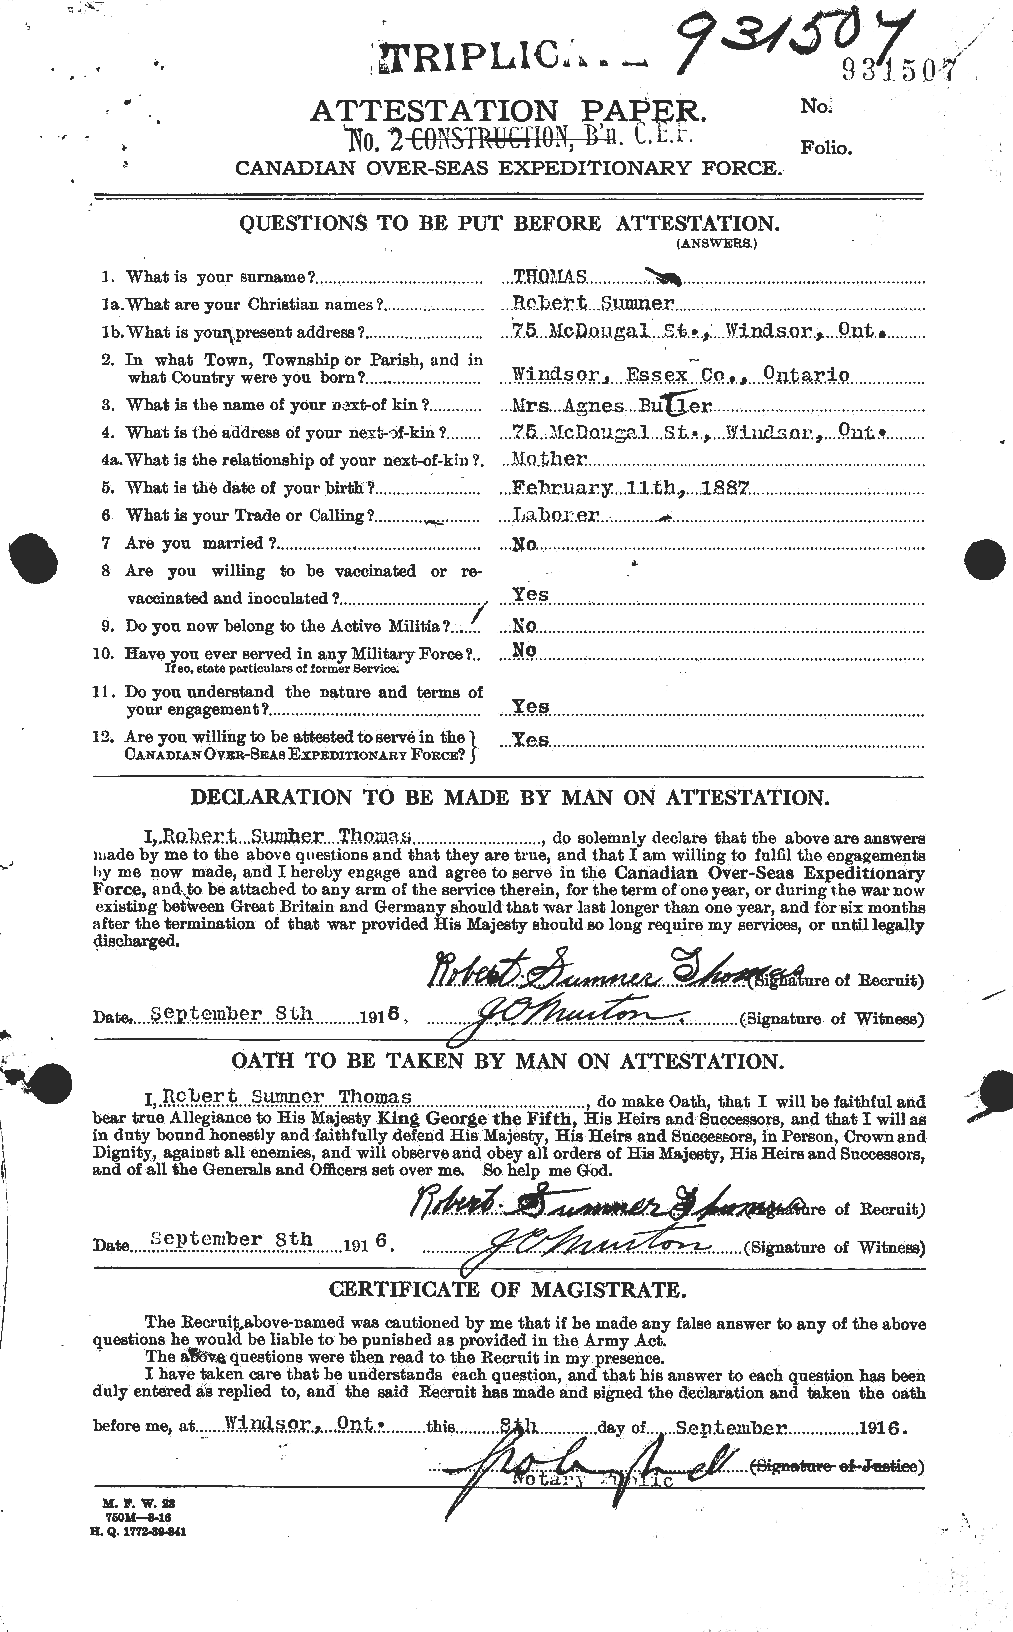 Dossiers du Personnel de la Première Guerre mondiale - CEC 632652a